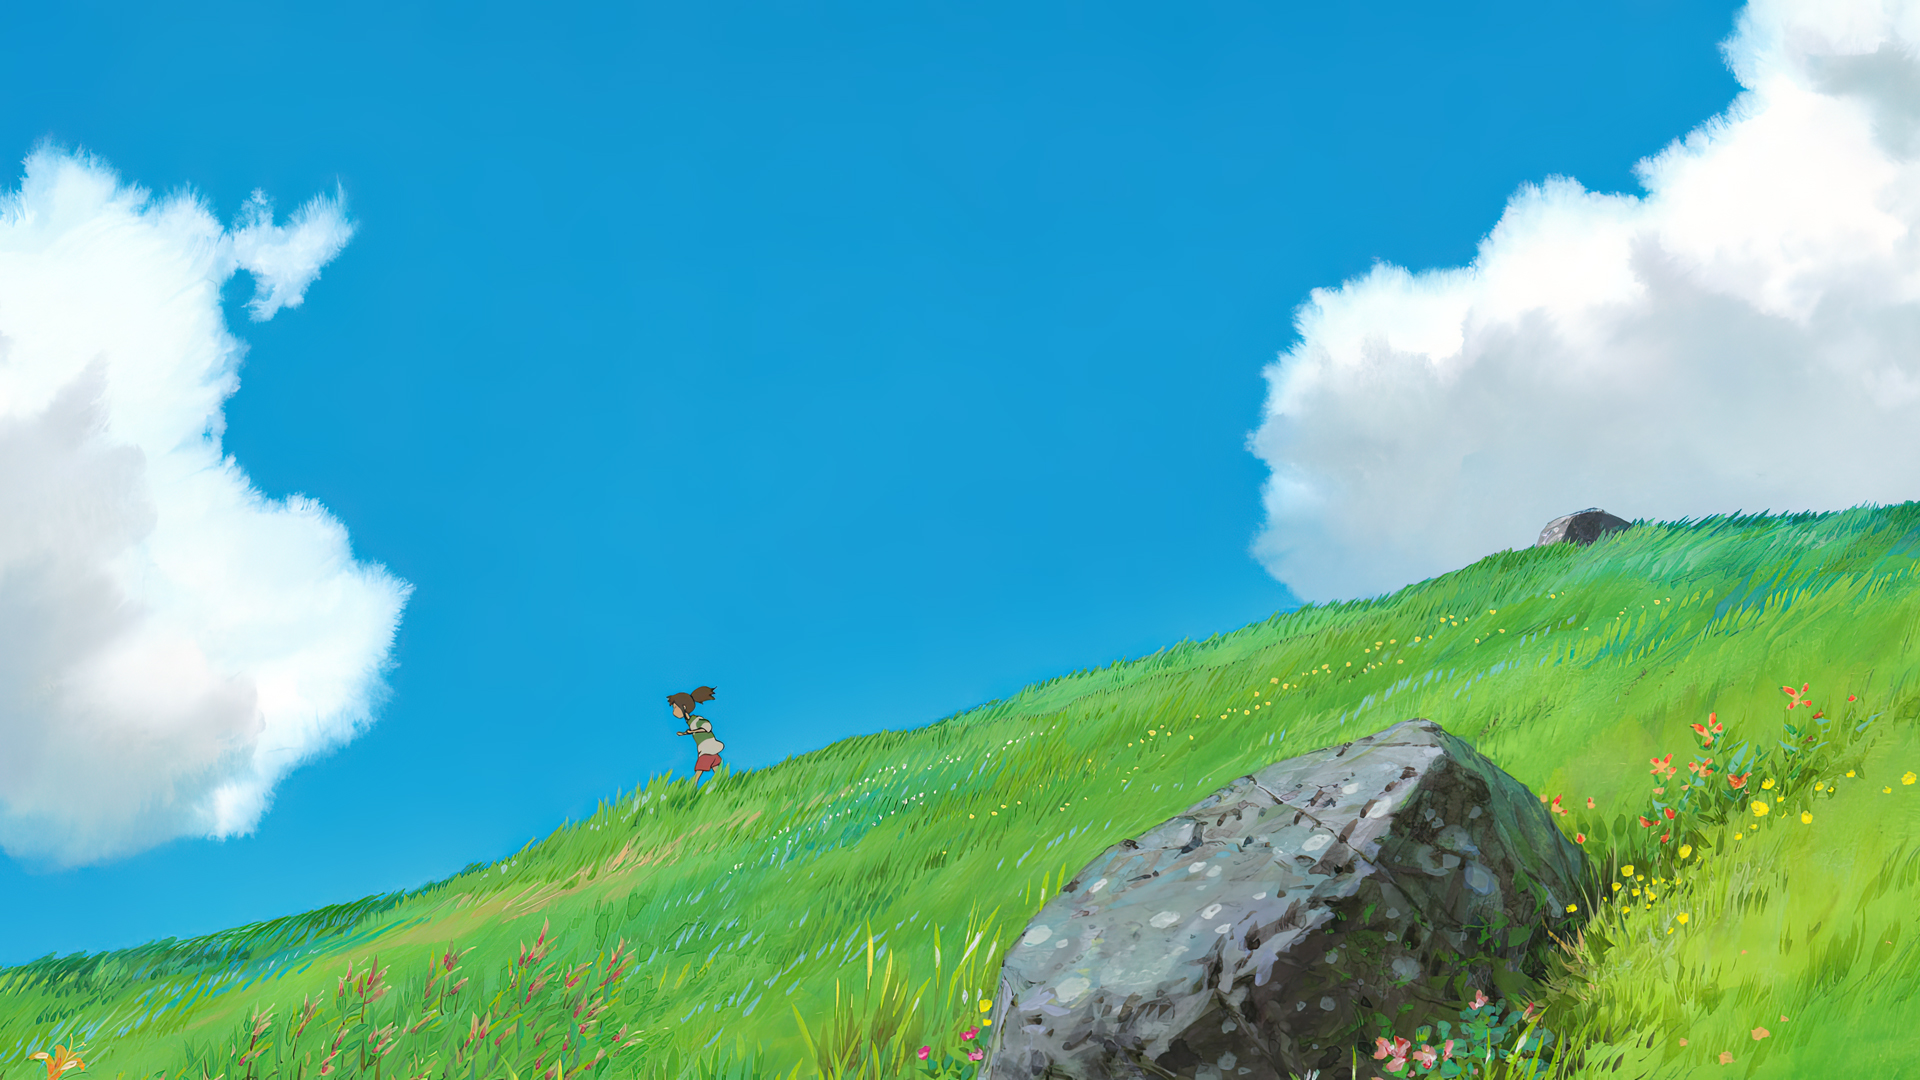 Spirited Away Sen To Chihiro Animated Movies Film Stills Sky Clouds Grass Hayao Miyazaki Summer Anim 1920x1080